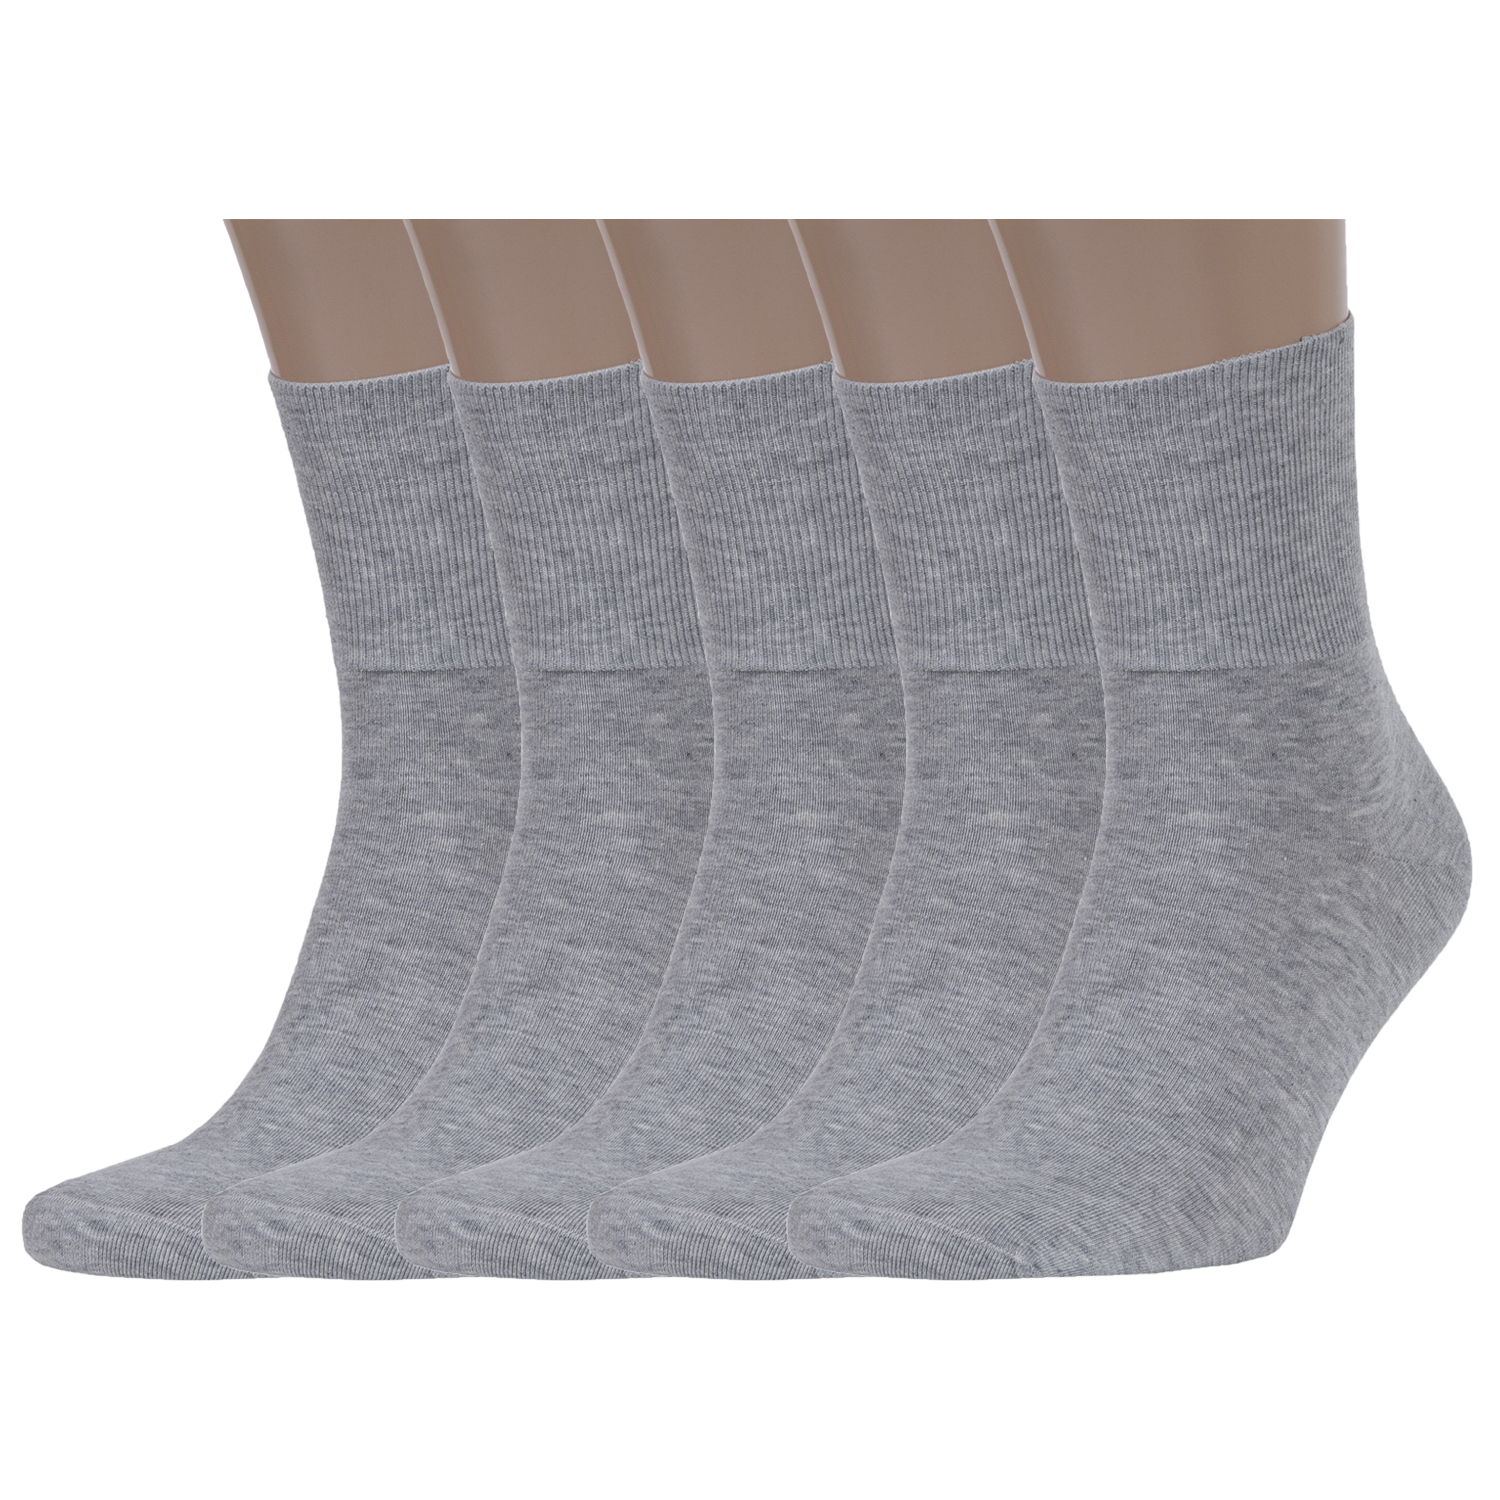 

Комплект носков мужских Rusocks серых, 5-М-245